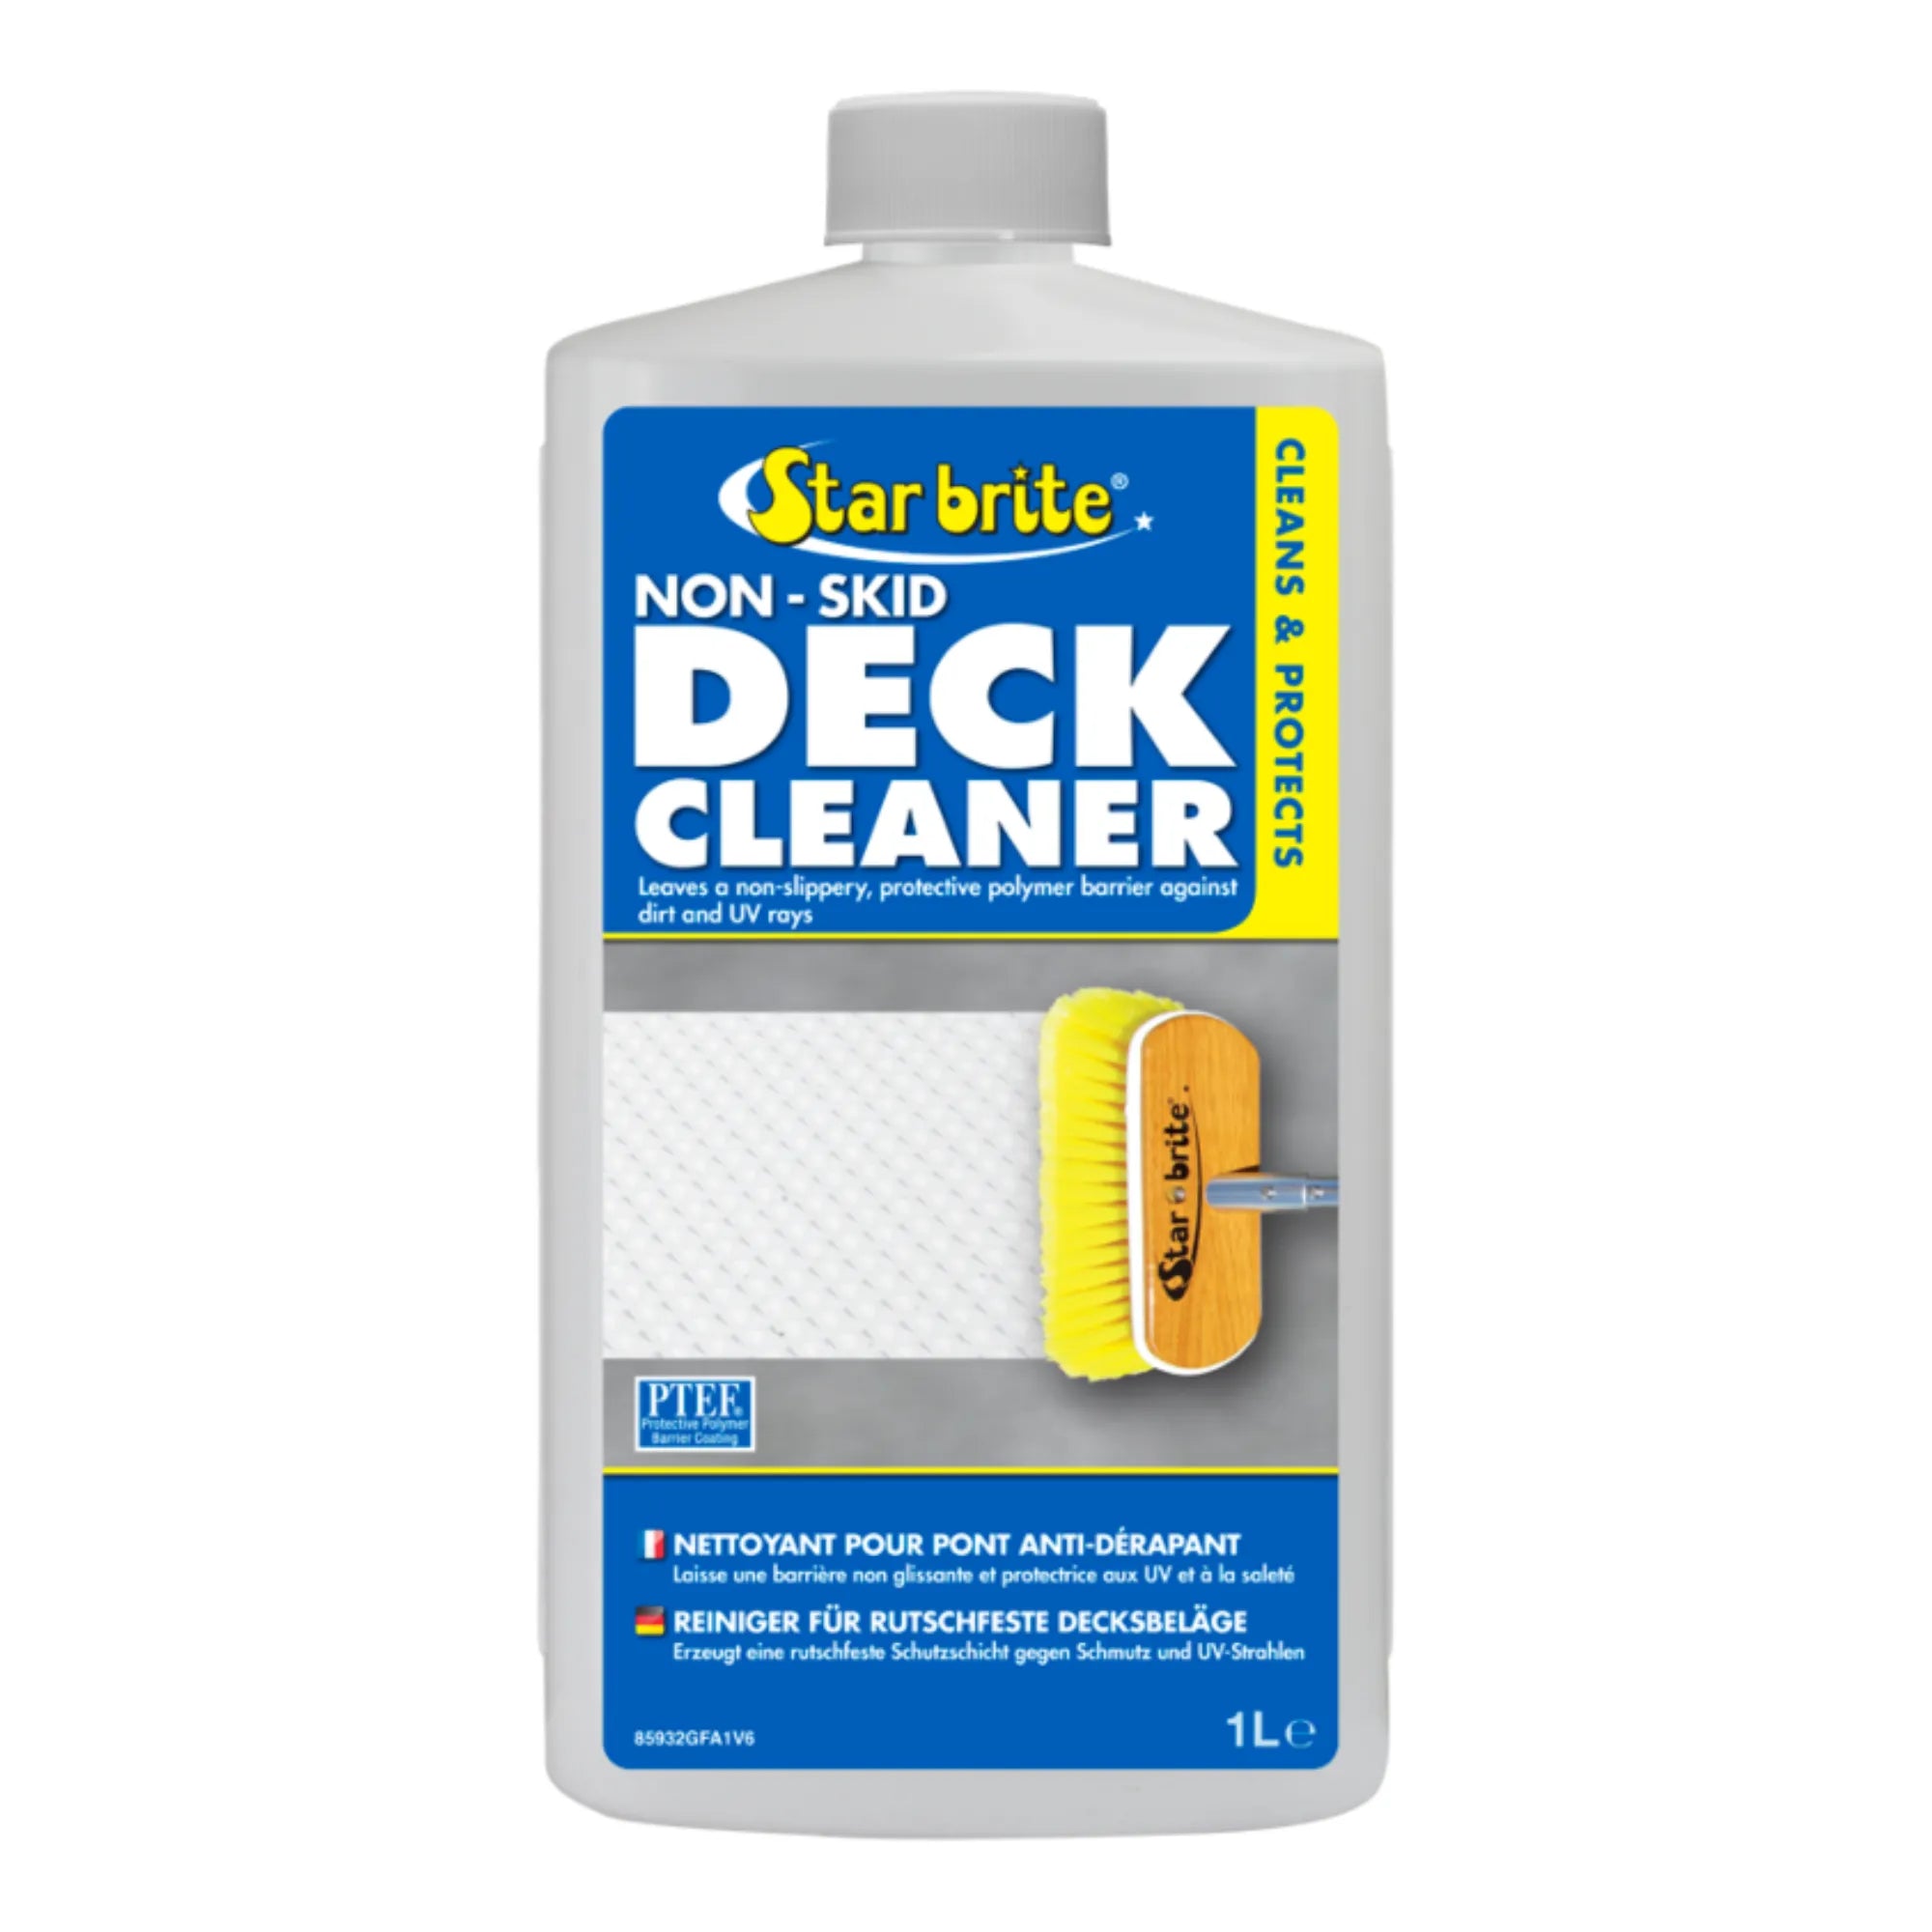 Non-Skid Deck Cleaner